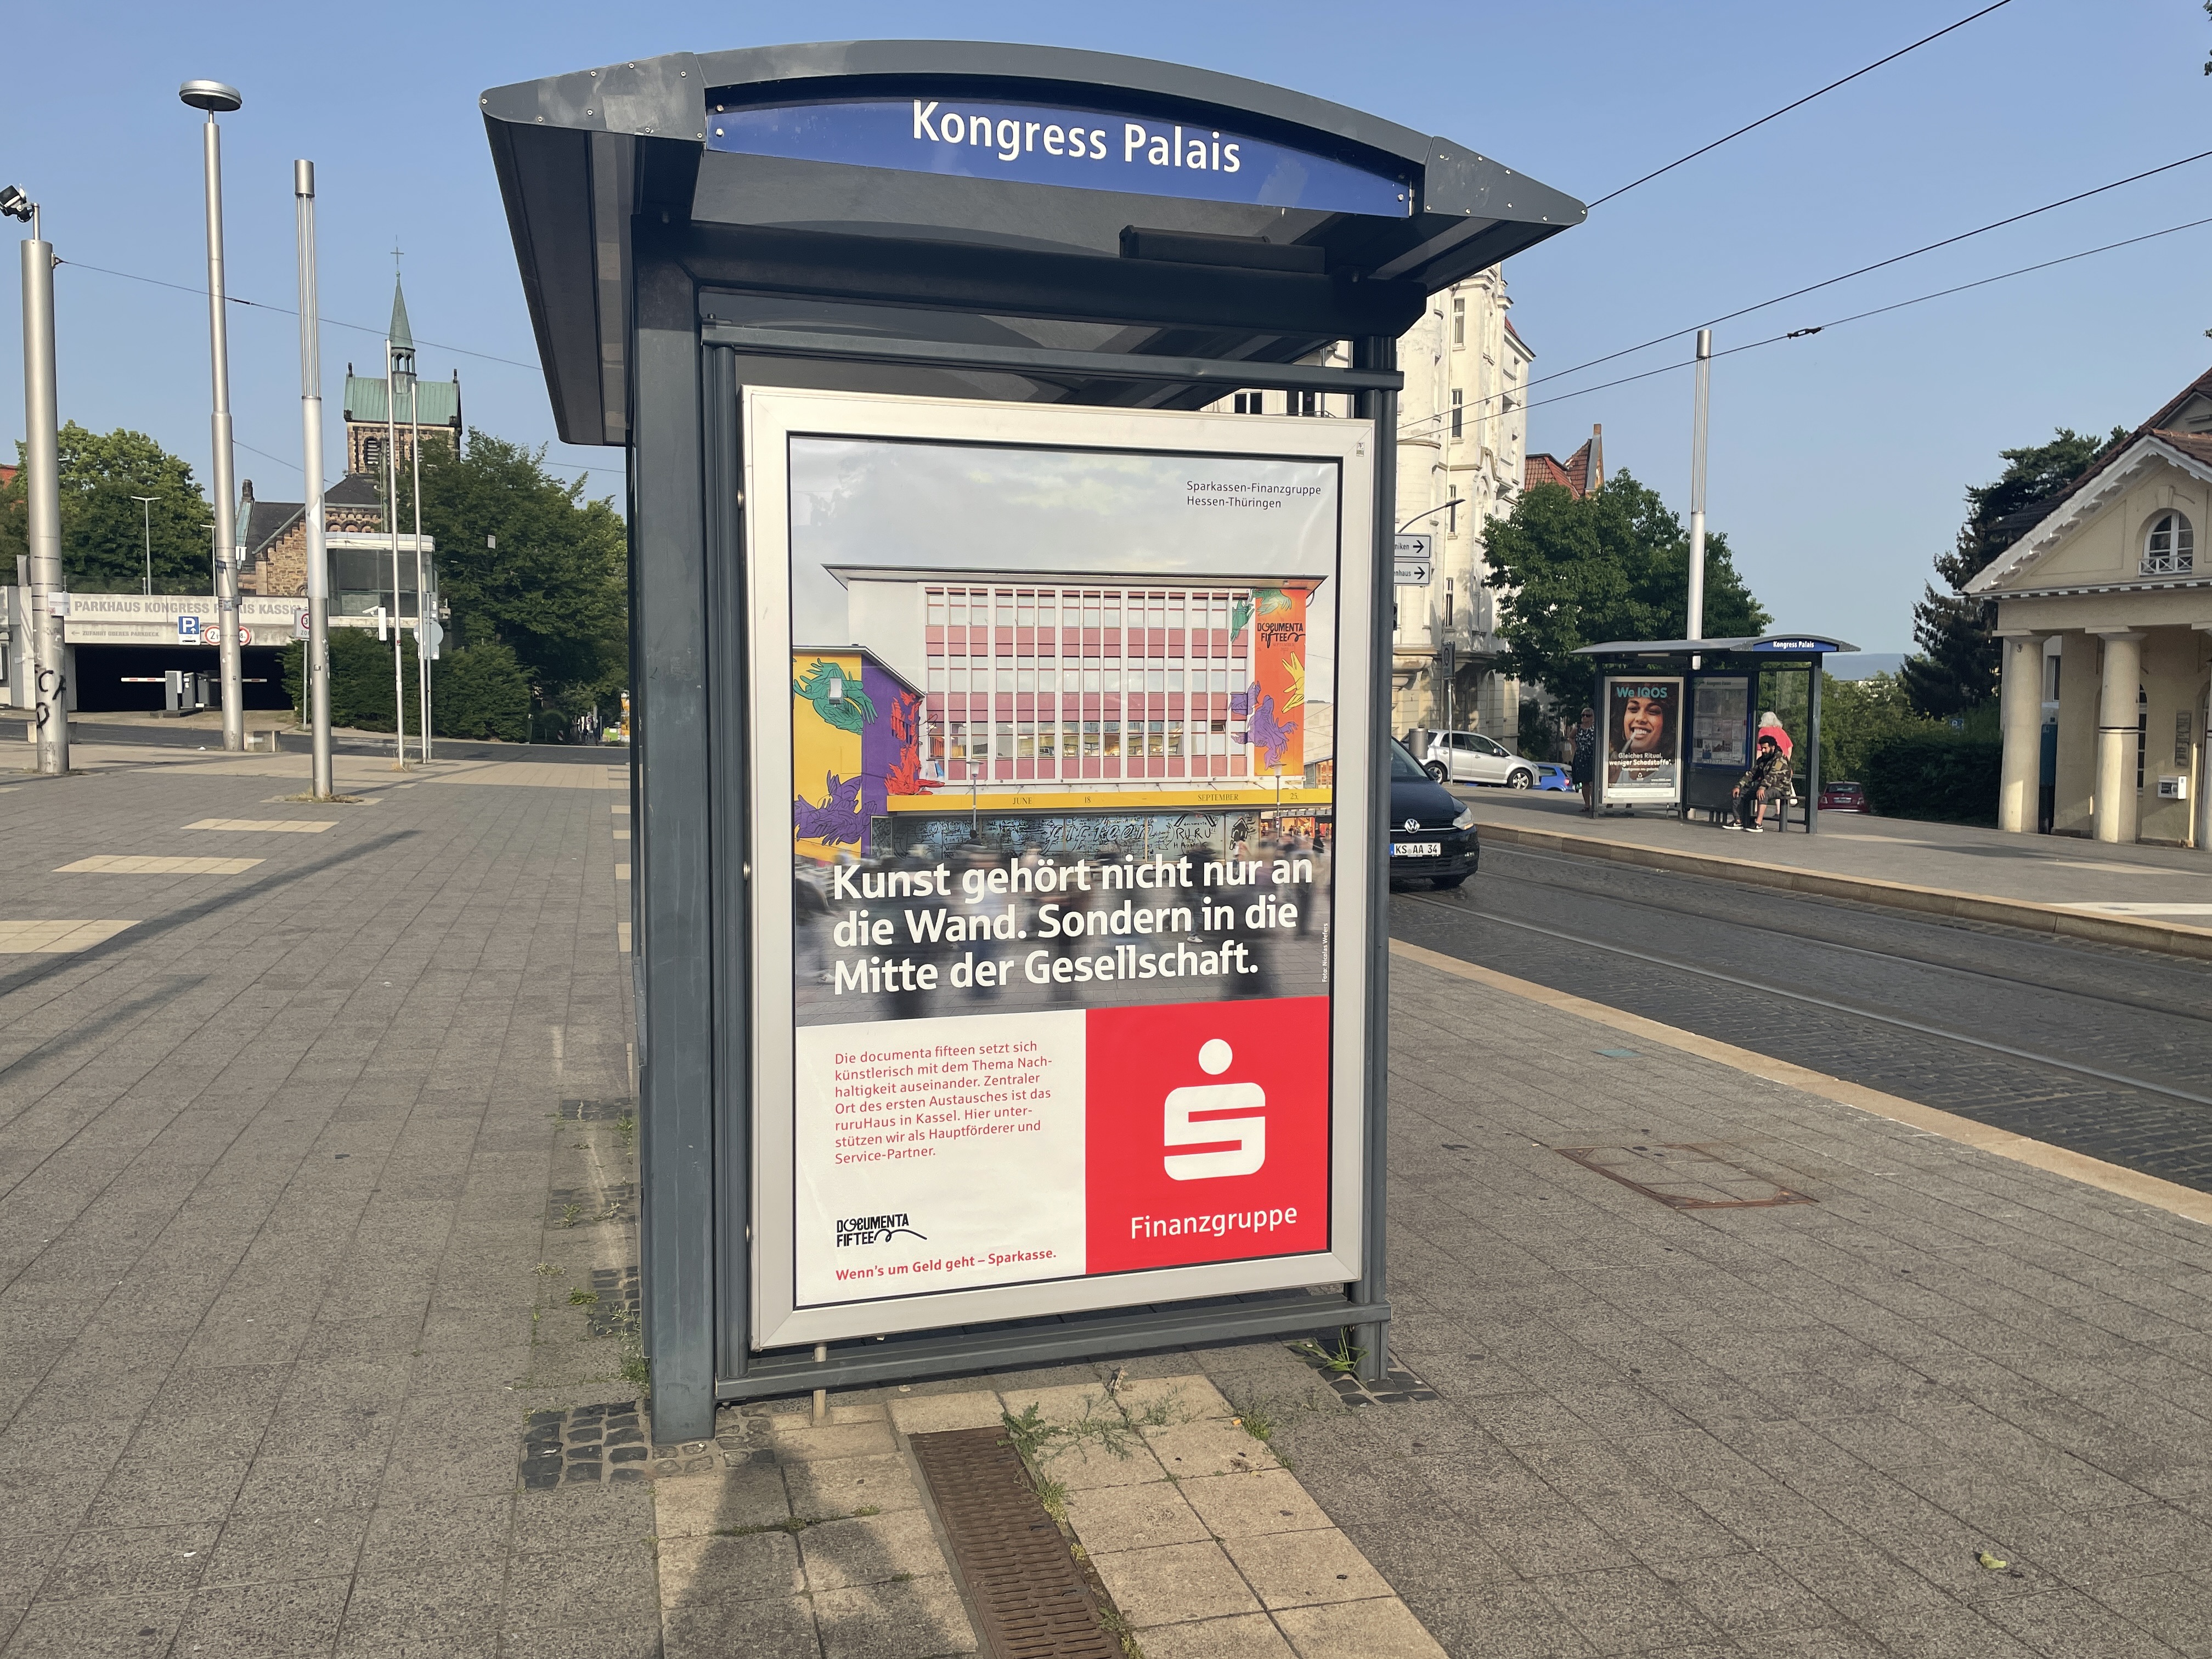 documenta fifteen advertisement at Kongress Palais tram stop, Kassel.